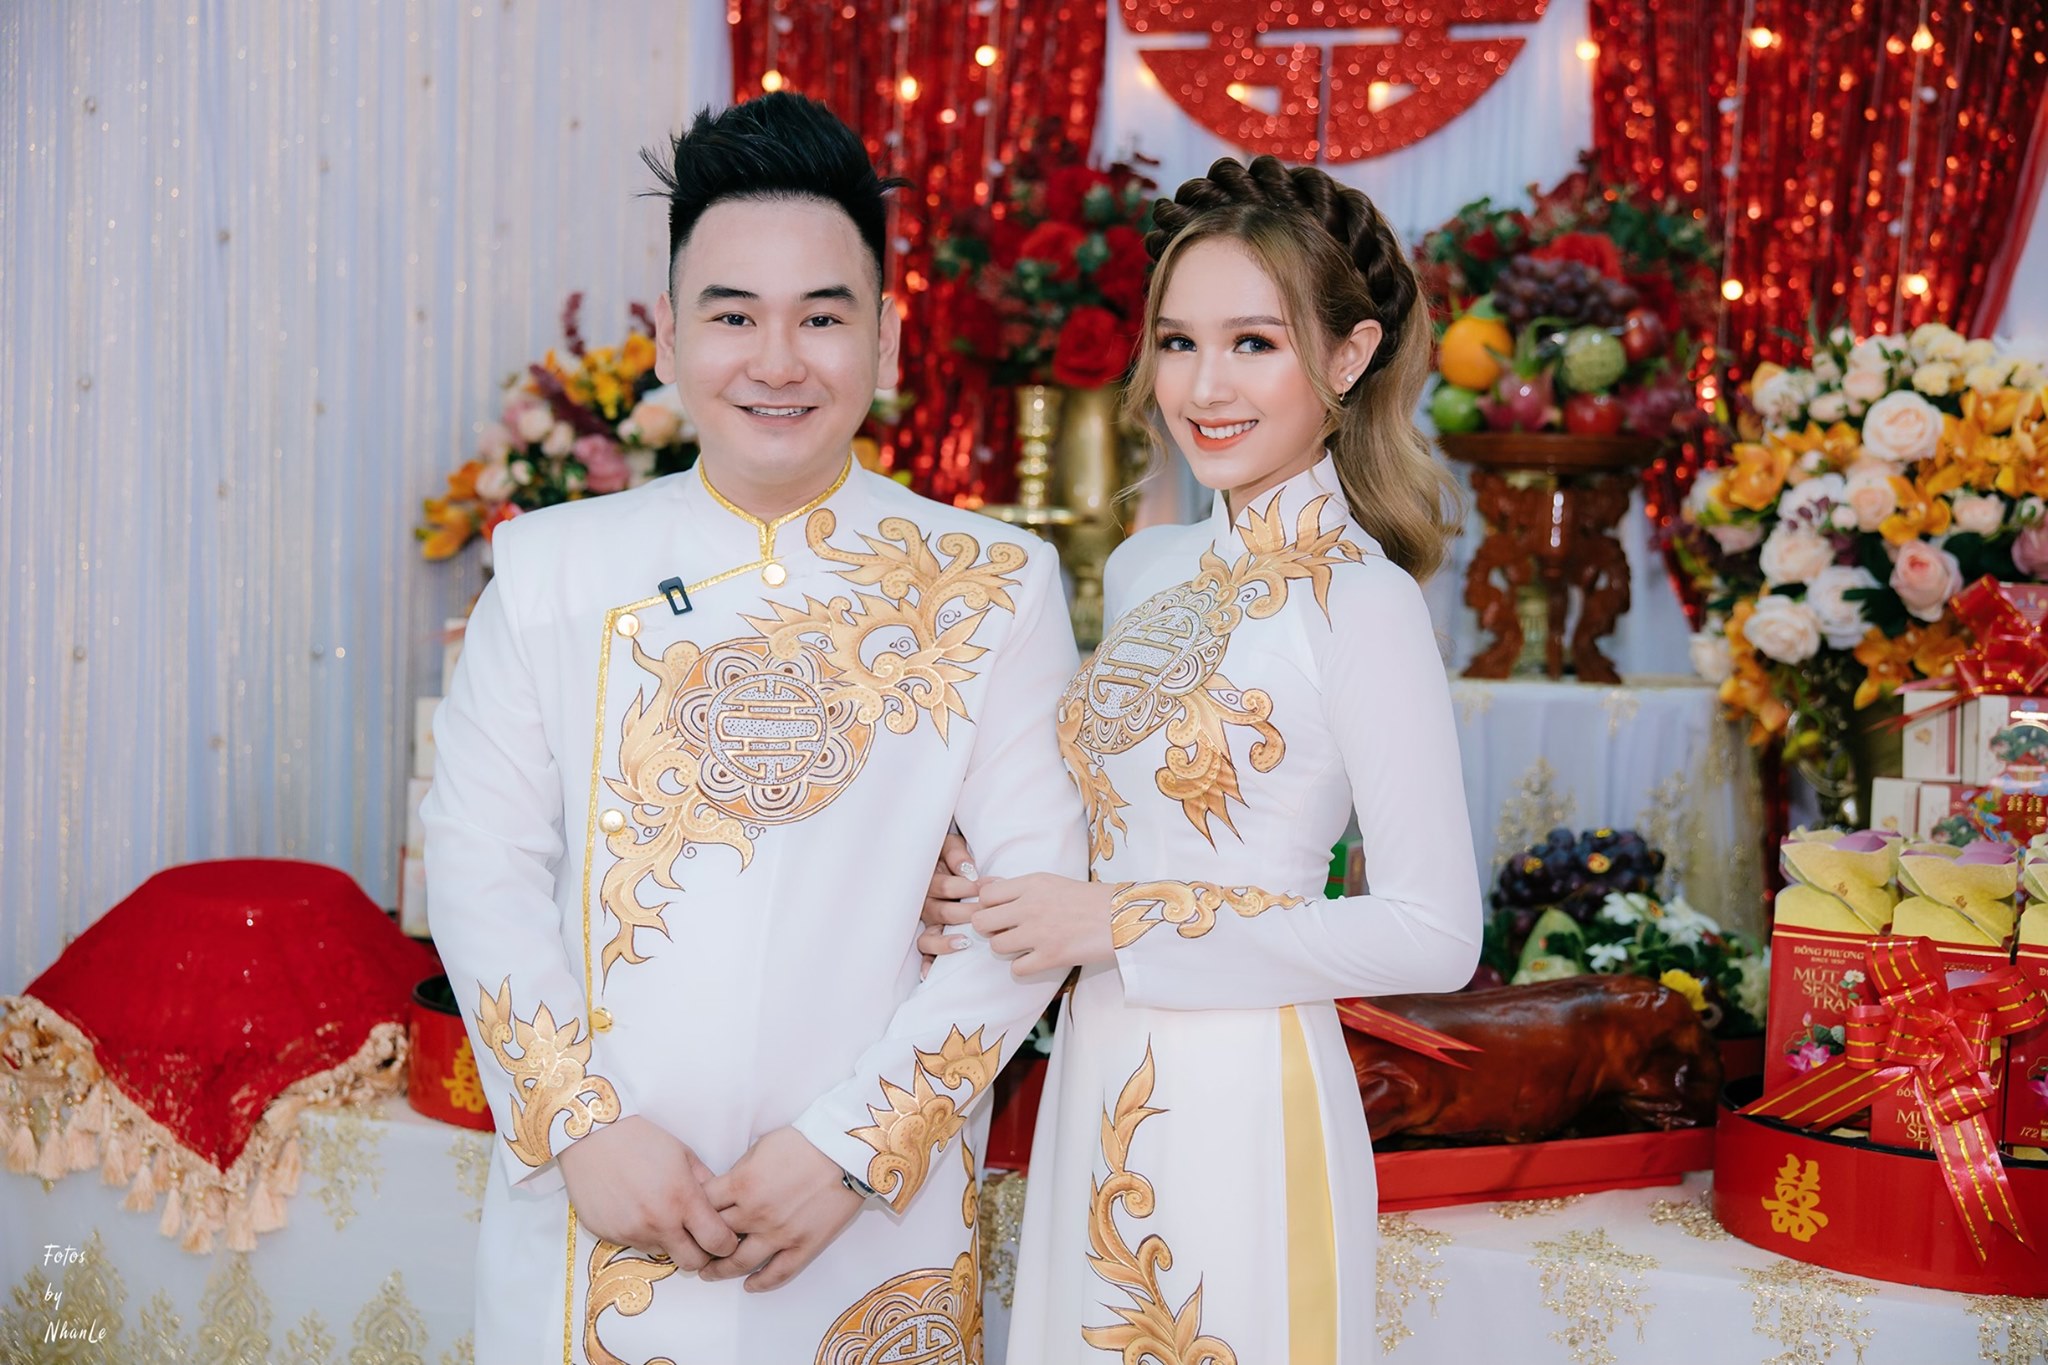 Cặp đôi Xemesis (Hiếu Nghiêm) và Xoài Non (Trang Phạm) vừa tổ chức lễ đính hôn trong tháng này với sự chúc phúc của đông đảo khán giả.